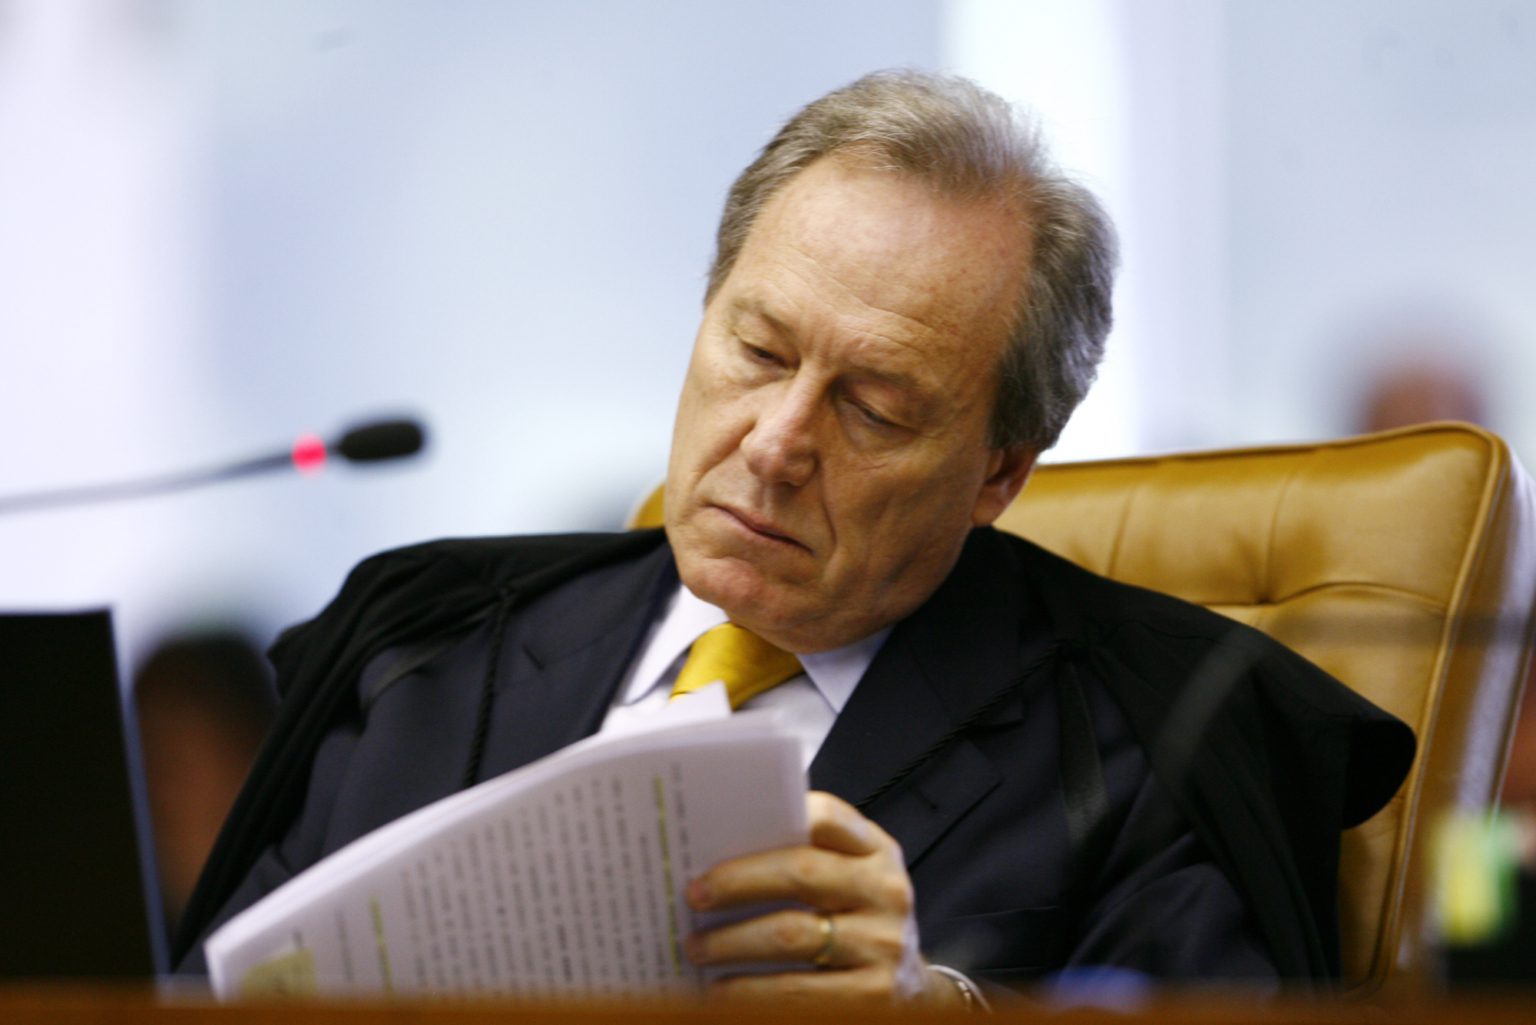 Ministro Ricardo Lewandowski em sessão de julgamento do caso Cesare Battisti, em 2009 / Crédito: Ueslei Marcelino/SCO/STF (18/11/2009)